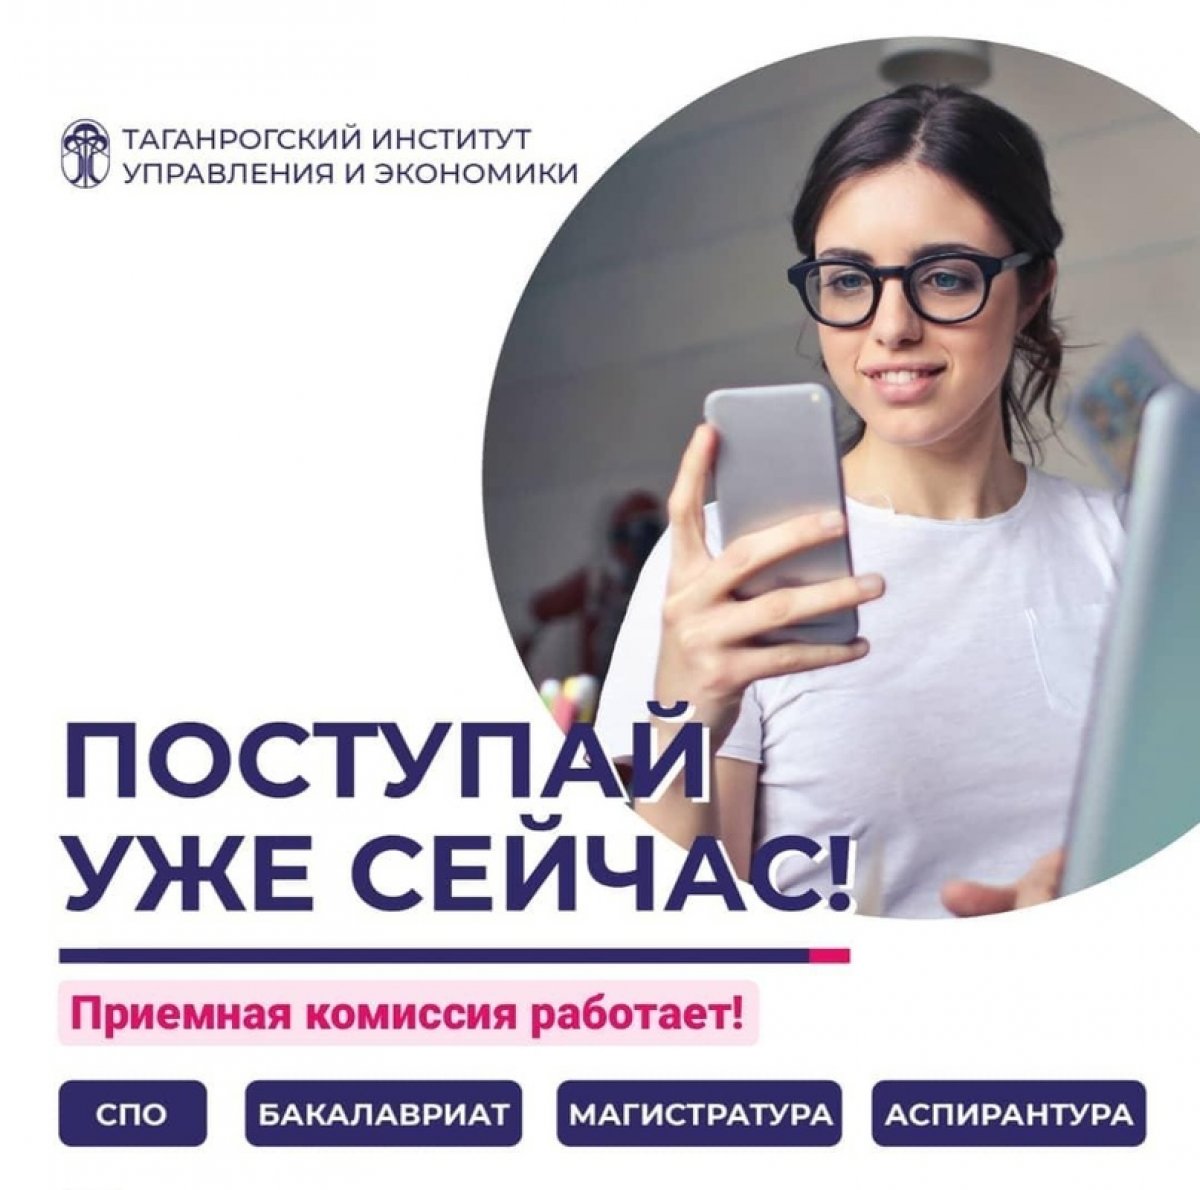 Друзья, напоминаем вам, что подать заявление и поступить в Таганрогский институт управления и экономики можно уже сейчас!